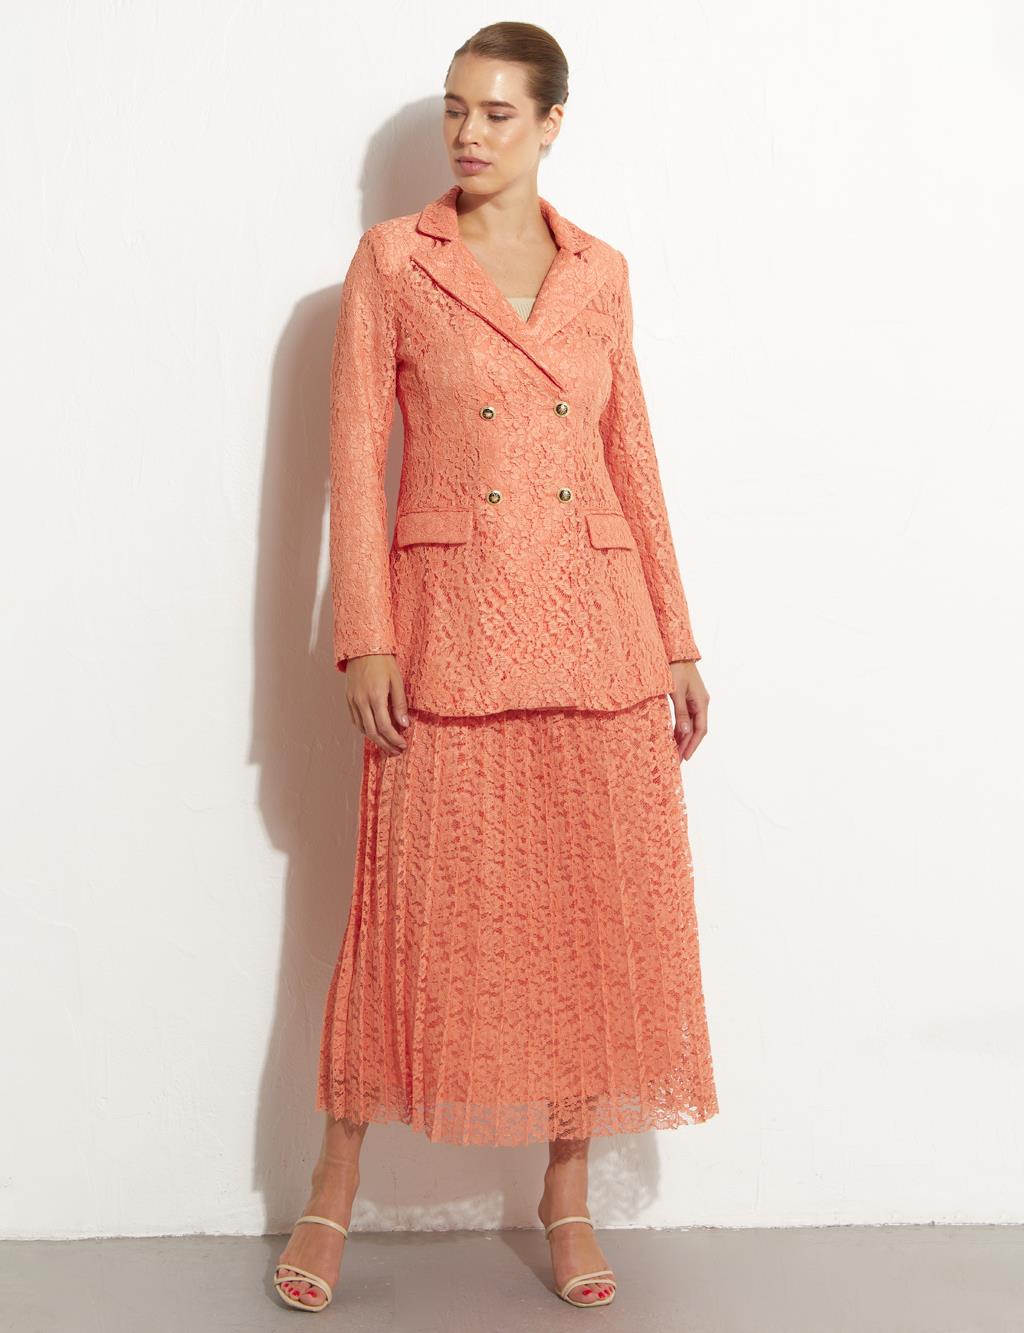 Плиссированная кружевная юбка персикового цвета Kayra плиссированная юбка на пуговицах цвета бежевого песка kayra